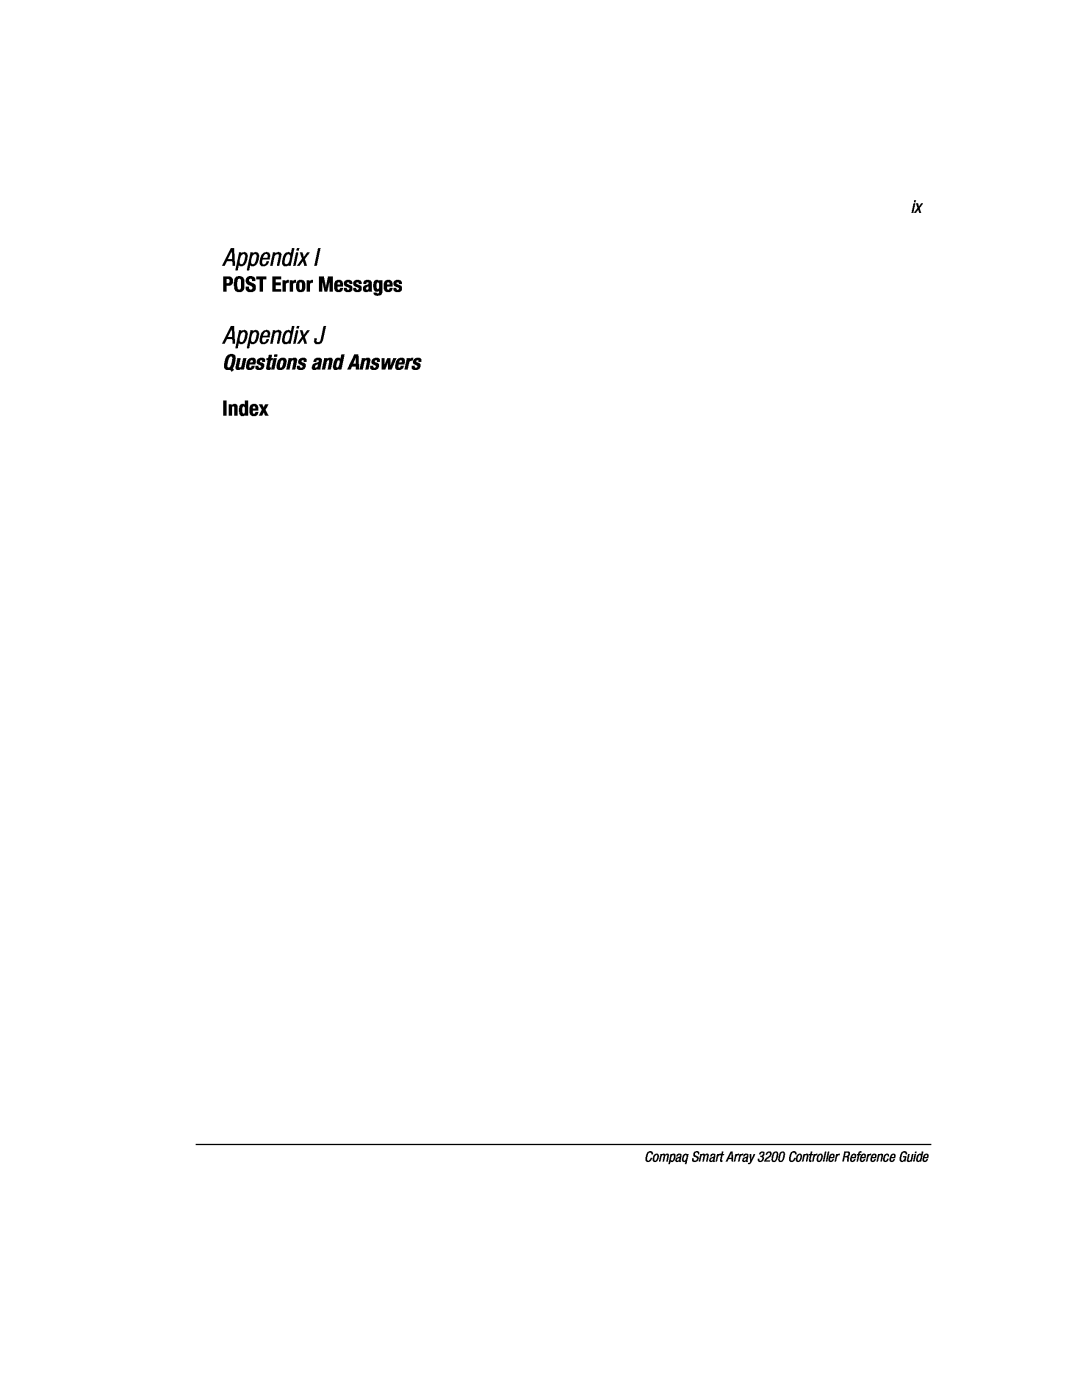 Compaq 3200 manual Appendix J, POST Error Messages, Index, Questions and Answers 